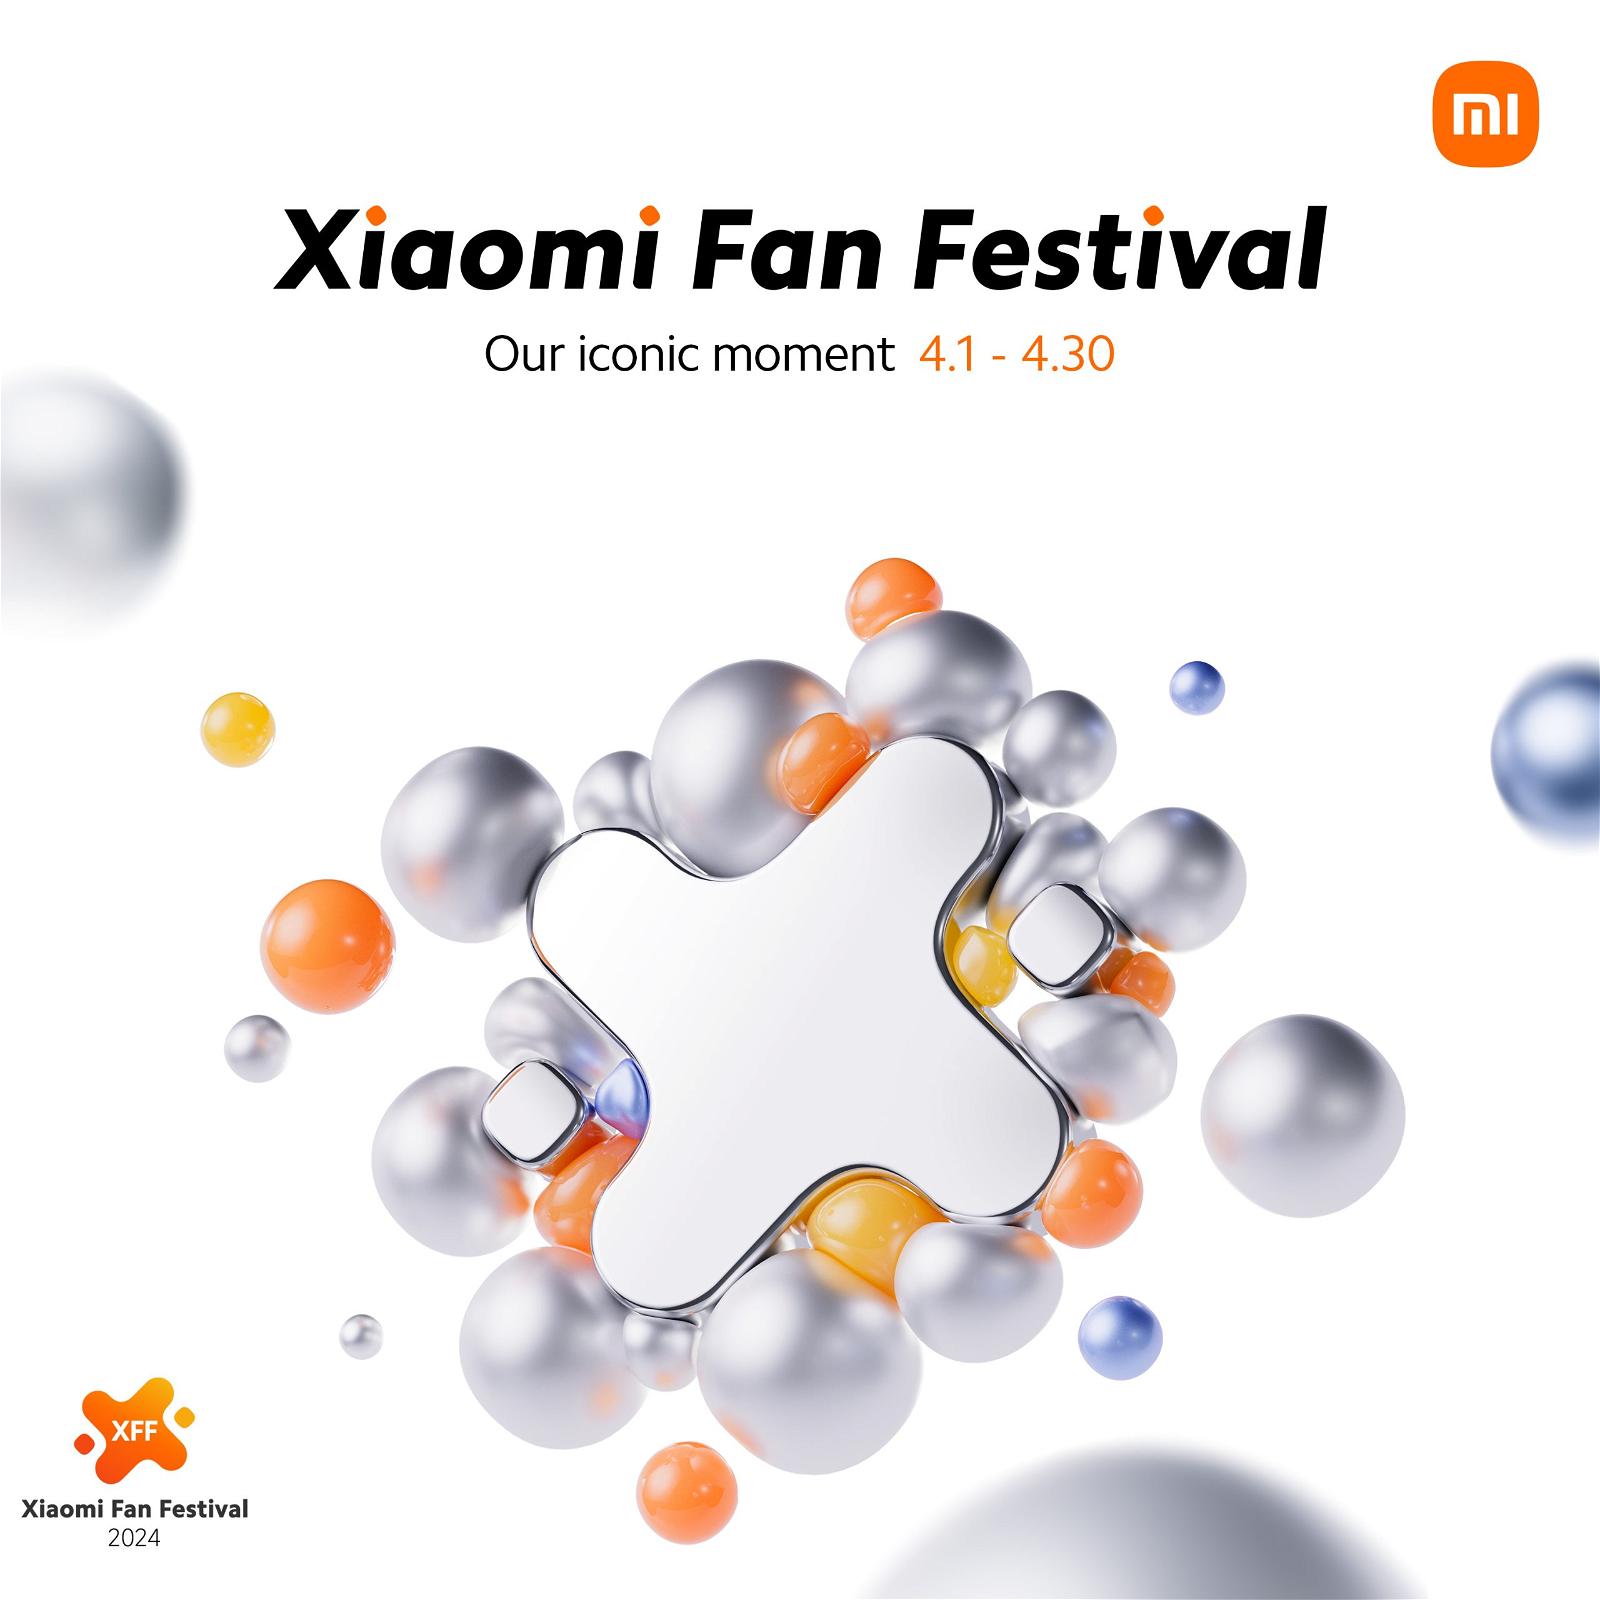 iaomi-Fan-Festival-Grab-Your-Favorites-